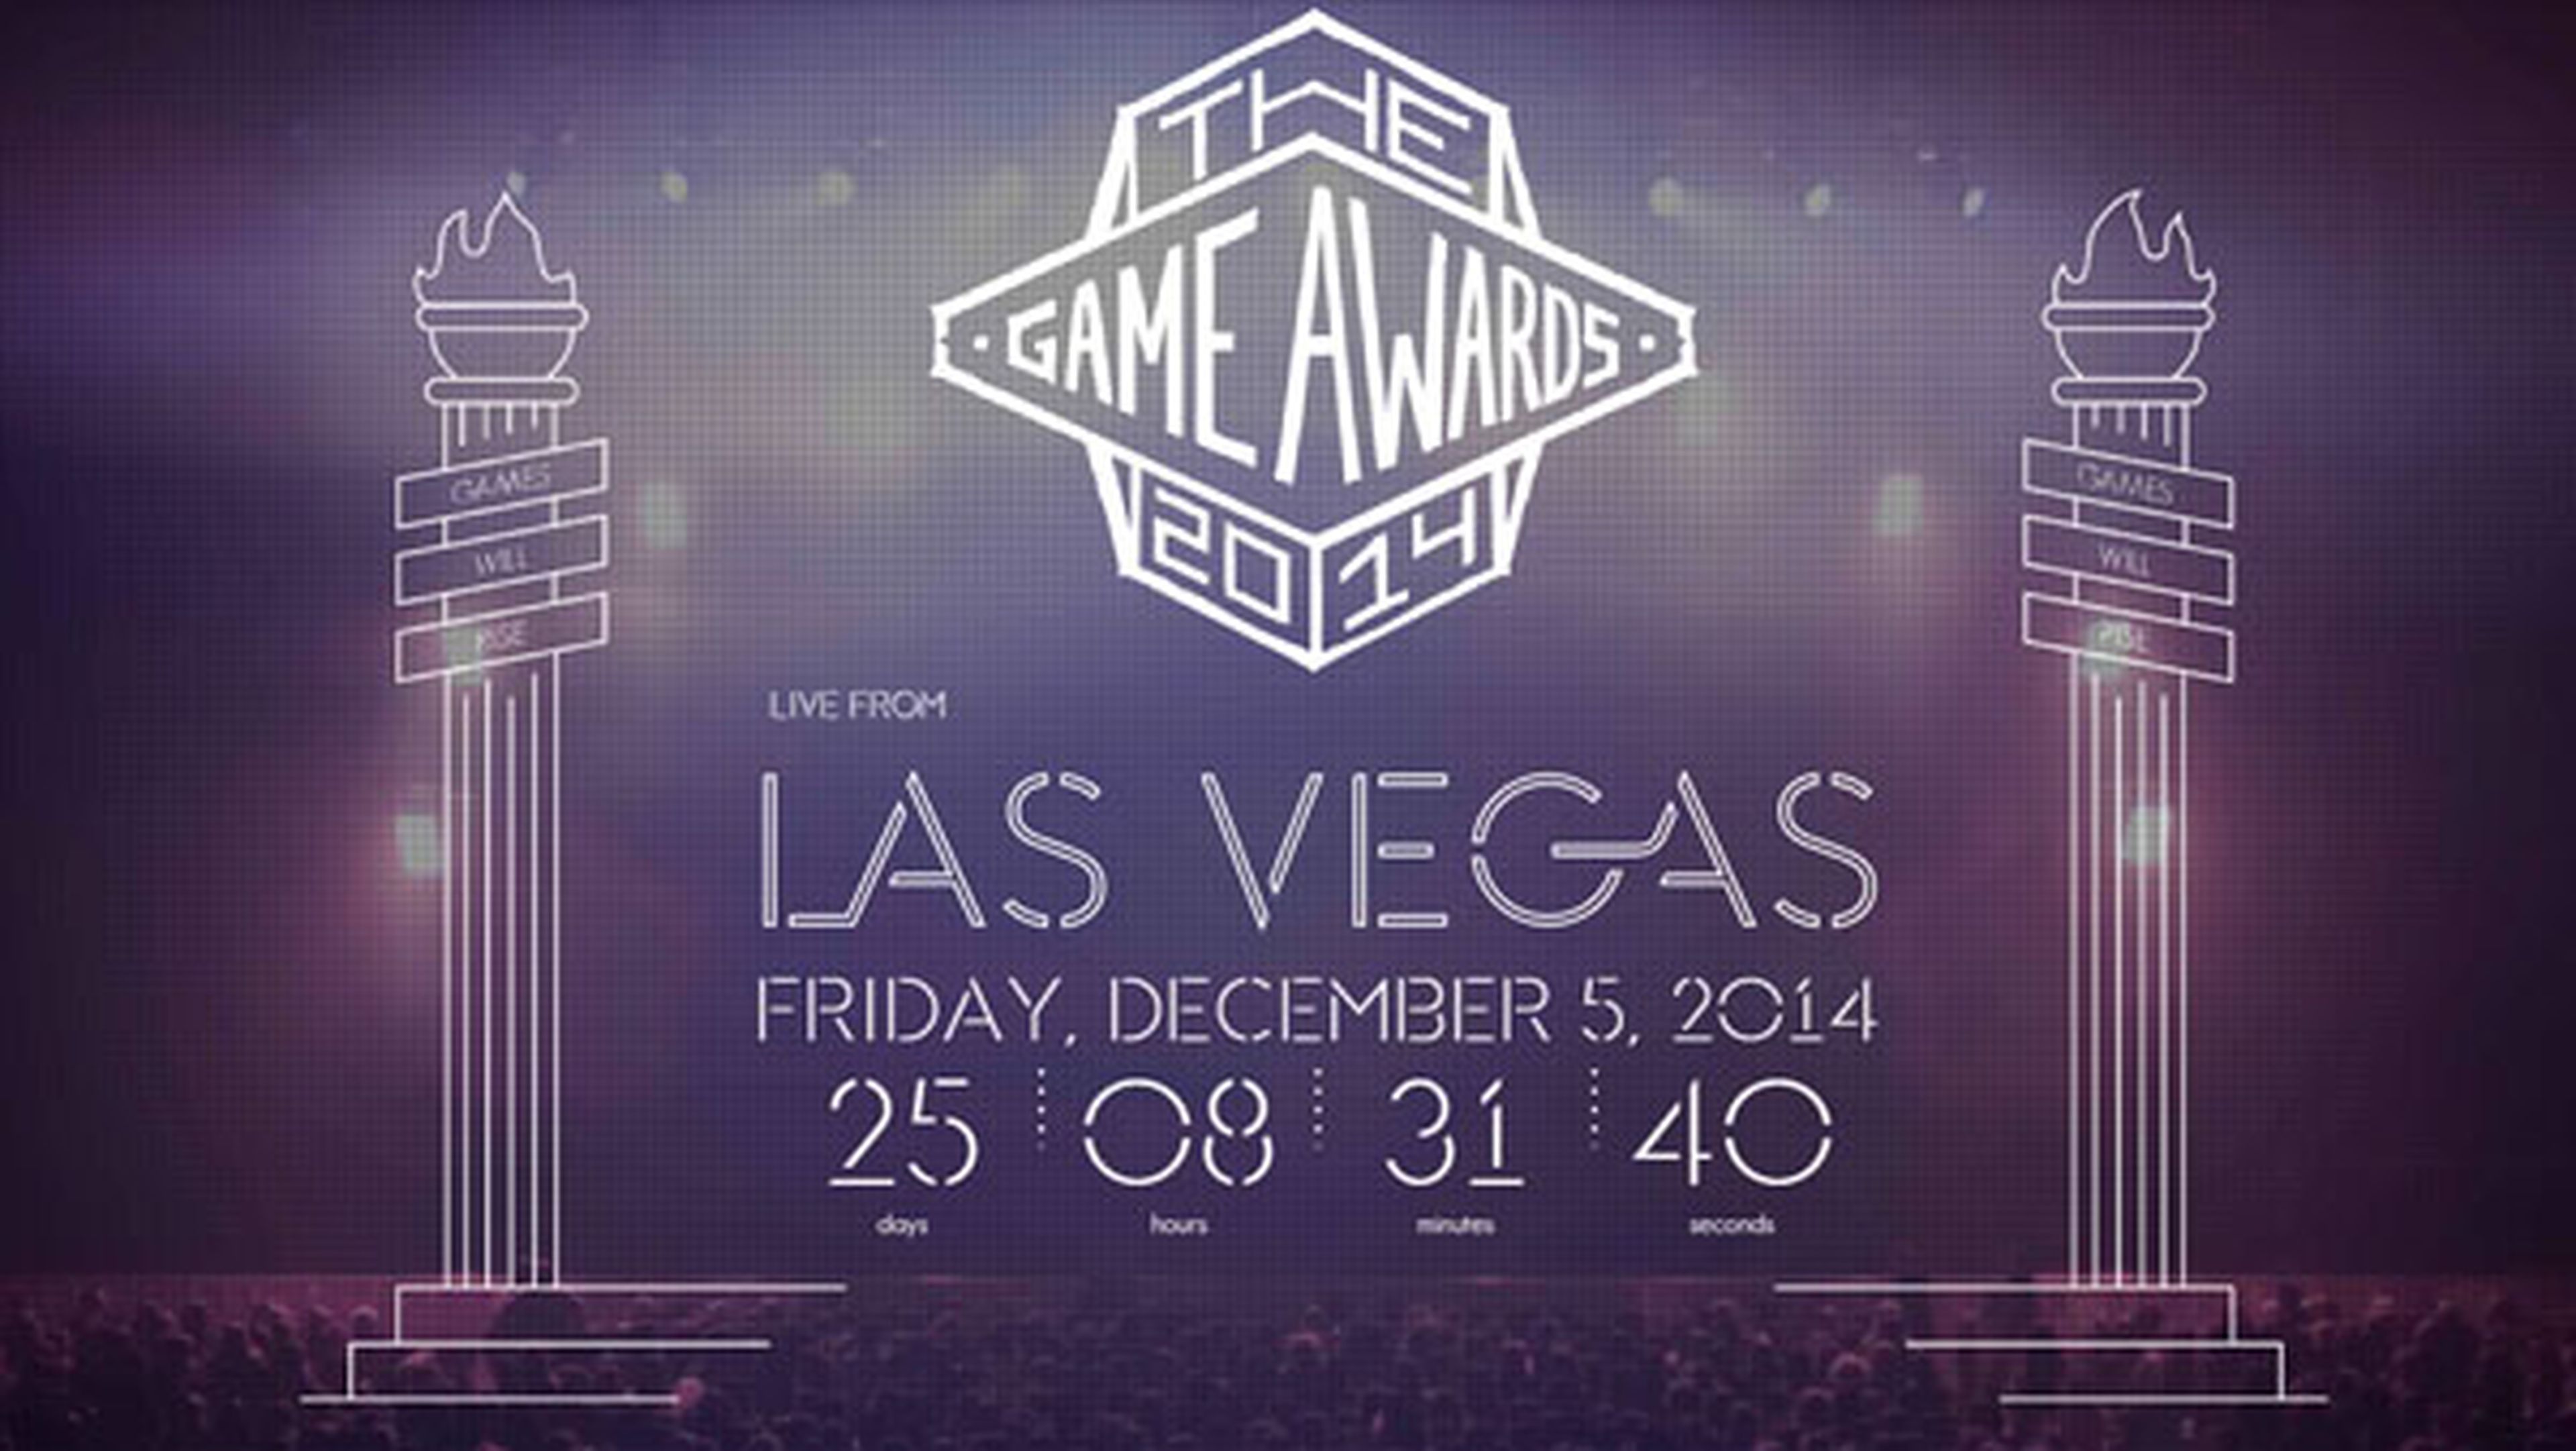 Se anuncian The Game Awards, sucesores de los VGX